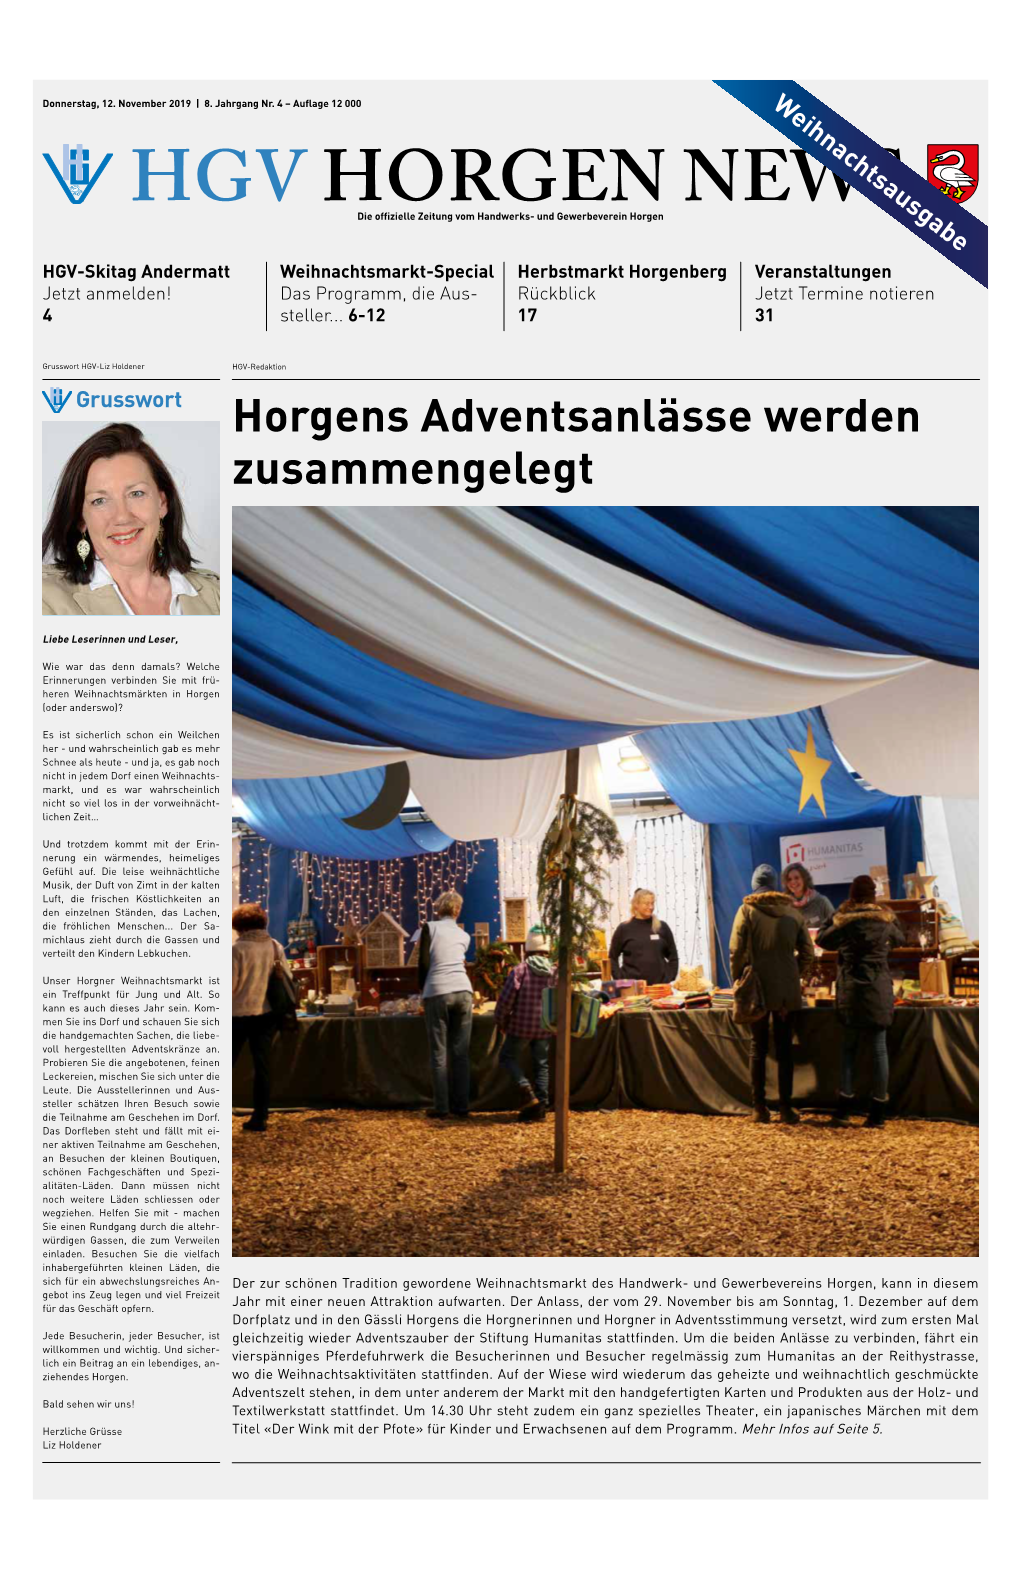 HGV Horgen News Hat Mit Hans Zollinger, Präsident Viehschauverein Hirzel Über Den Sinn Und Zweck Von Viehschauen Gesprochen